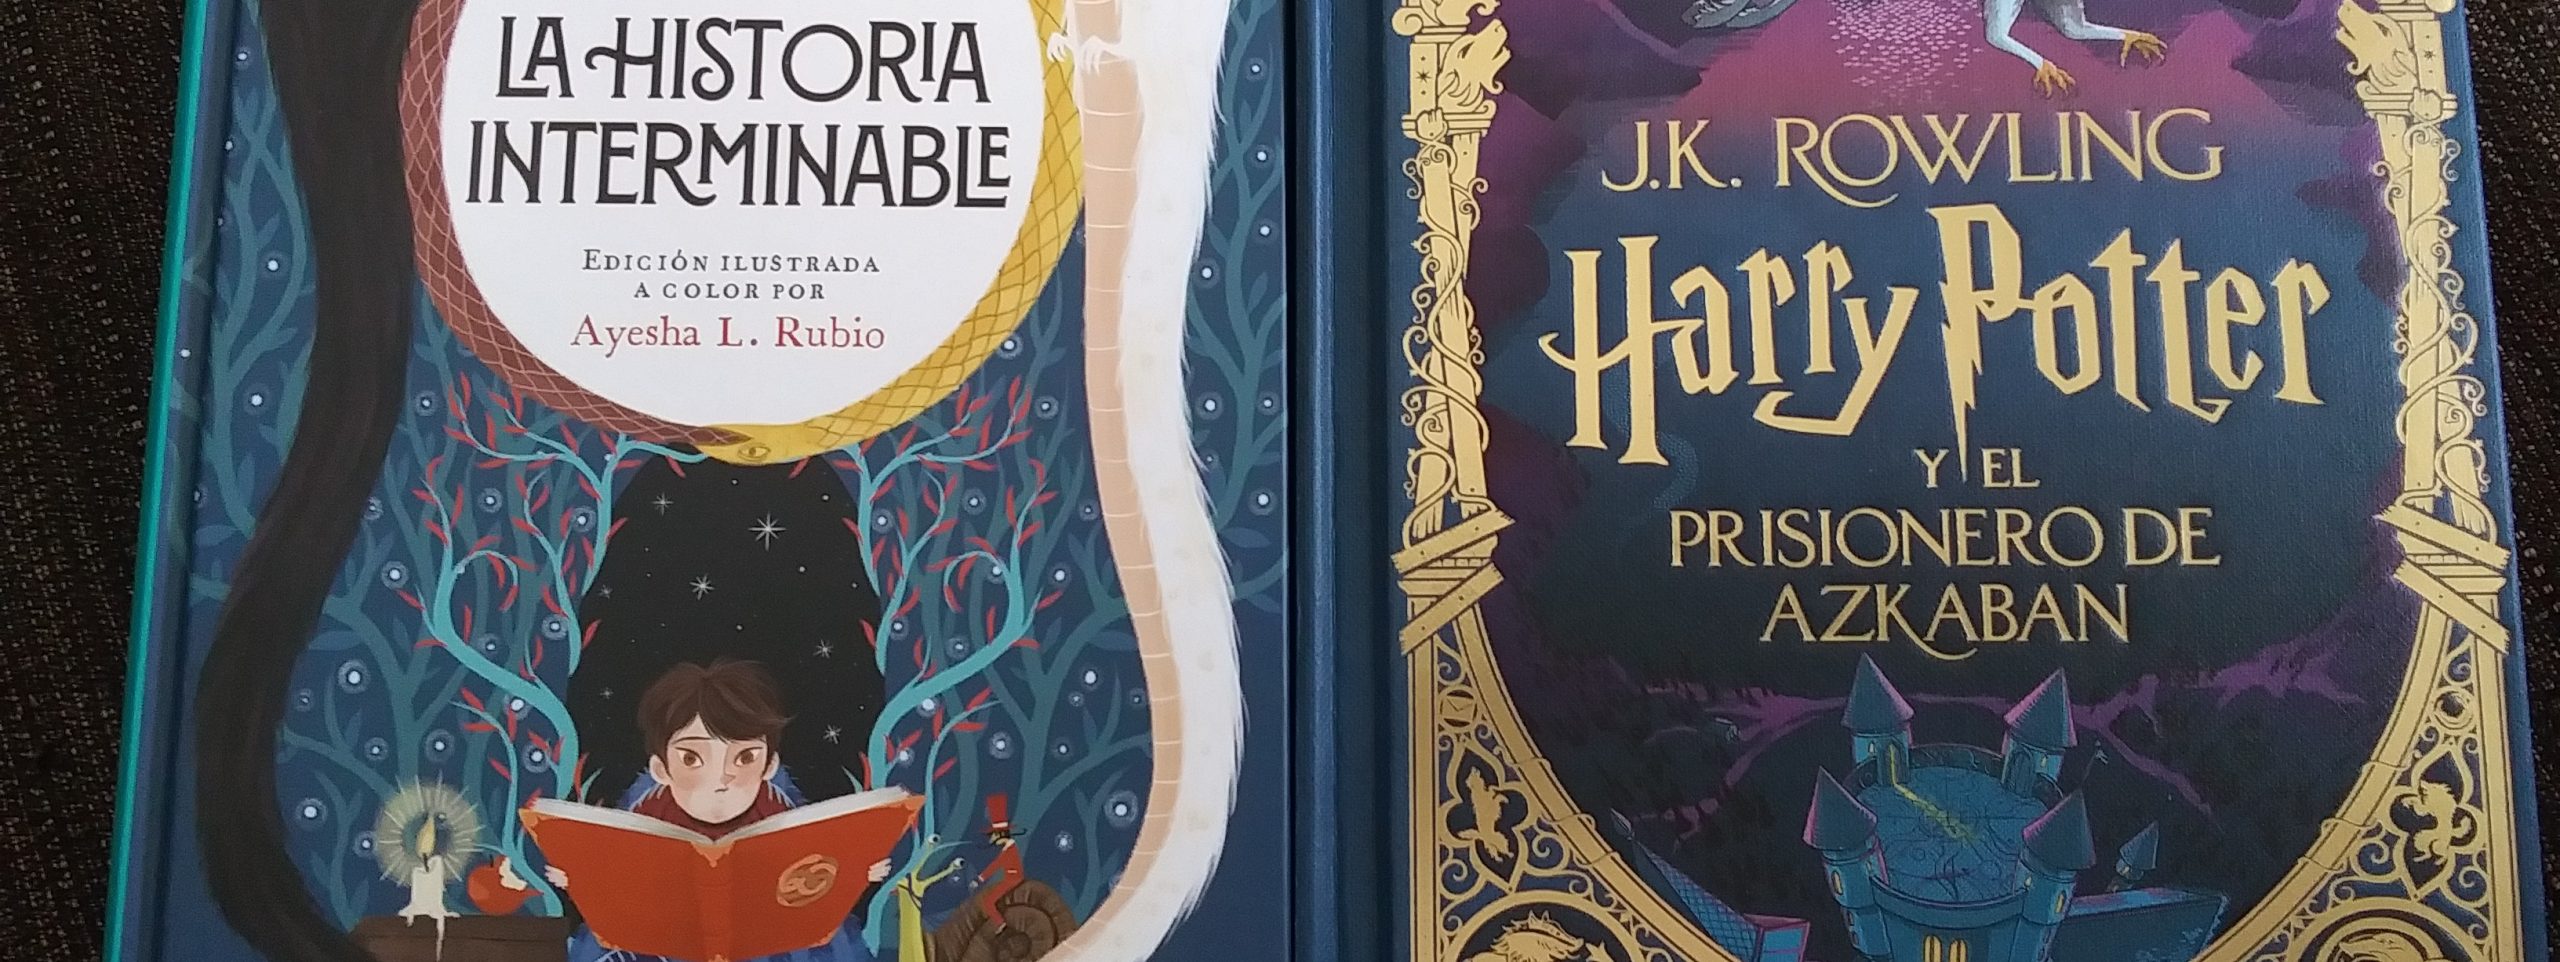 Ediciones ilustradas de Harry Potter y La historia interminable